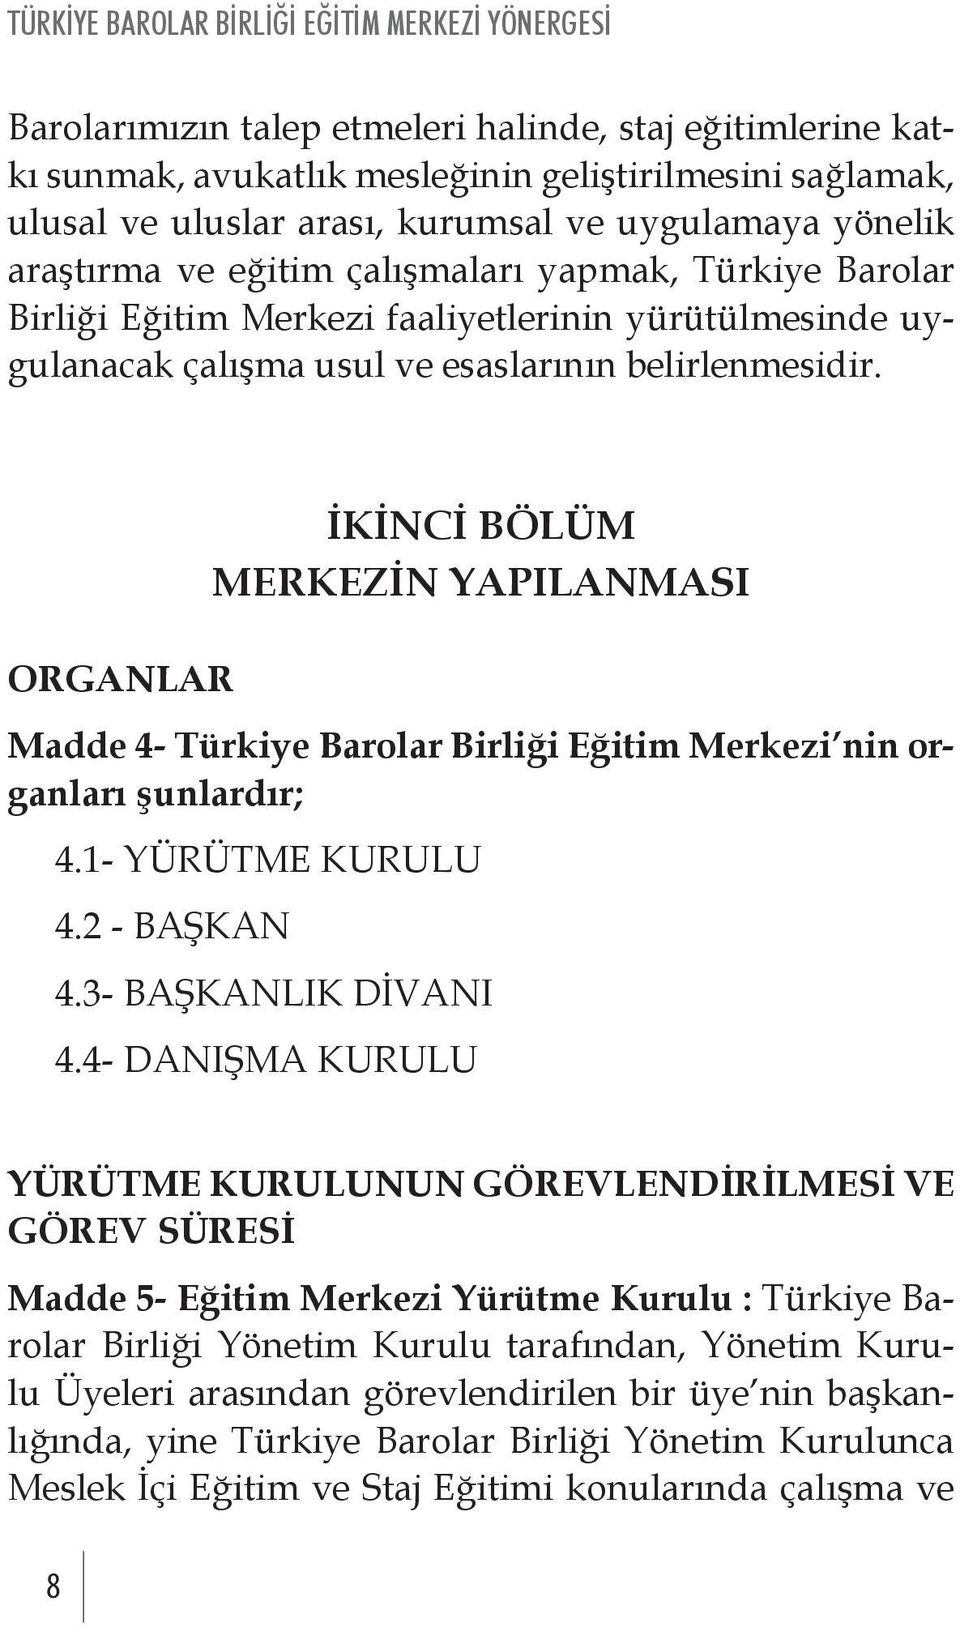 ORGANLAR İKİNCİ BÖLÜM MERKEZİN YAPILANMASI Madde 4- Türkiye Barolar Birliği Eğitim Merkezi nin organları şunlardır; 4.1- YÜRÜTME KURULU 4.2 - BAŞKAN 4.3- BAŞKANLIK DİVANI 4.